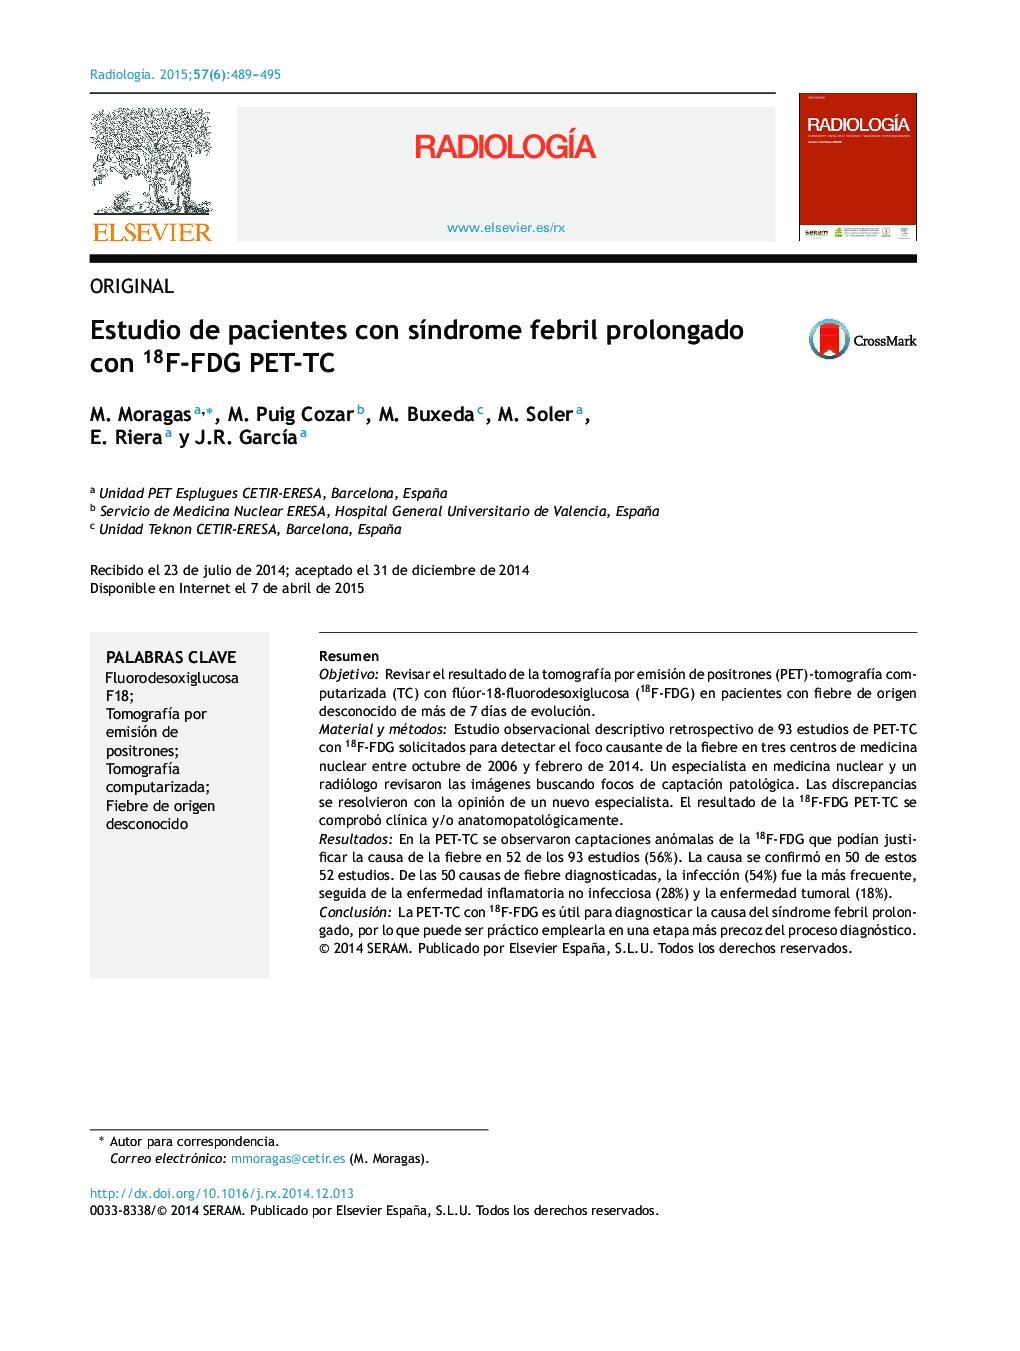 Estudio de pacientes con síndrome febril prolongado con 18F-FDG PET-TC